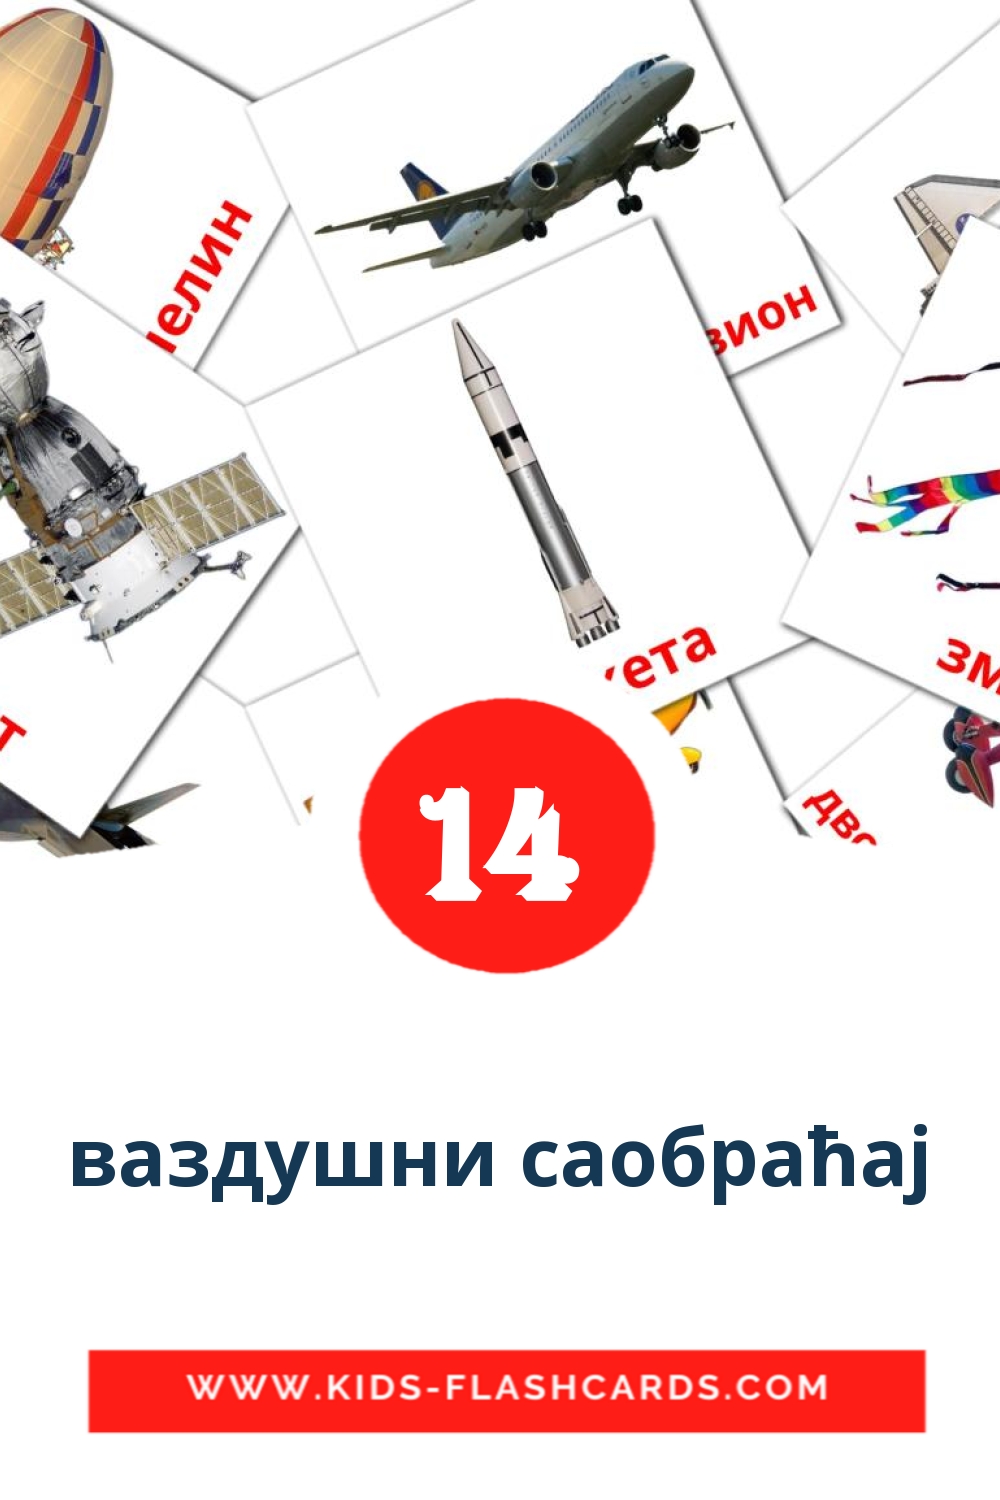 14 tarjetas didacticas de ваздушни саобраћај para el jardín de infancia en serbio(cirílico)